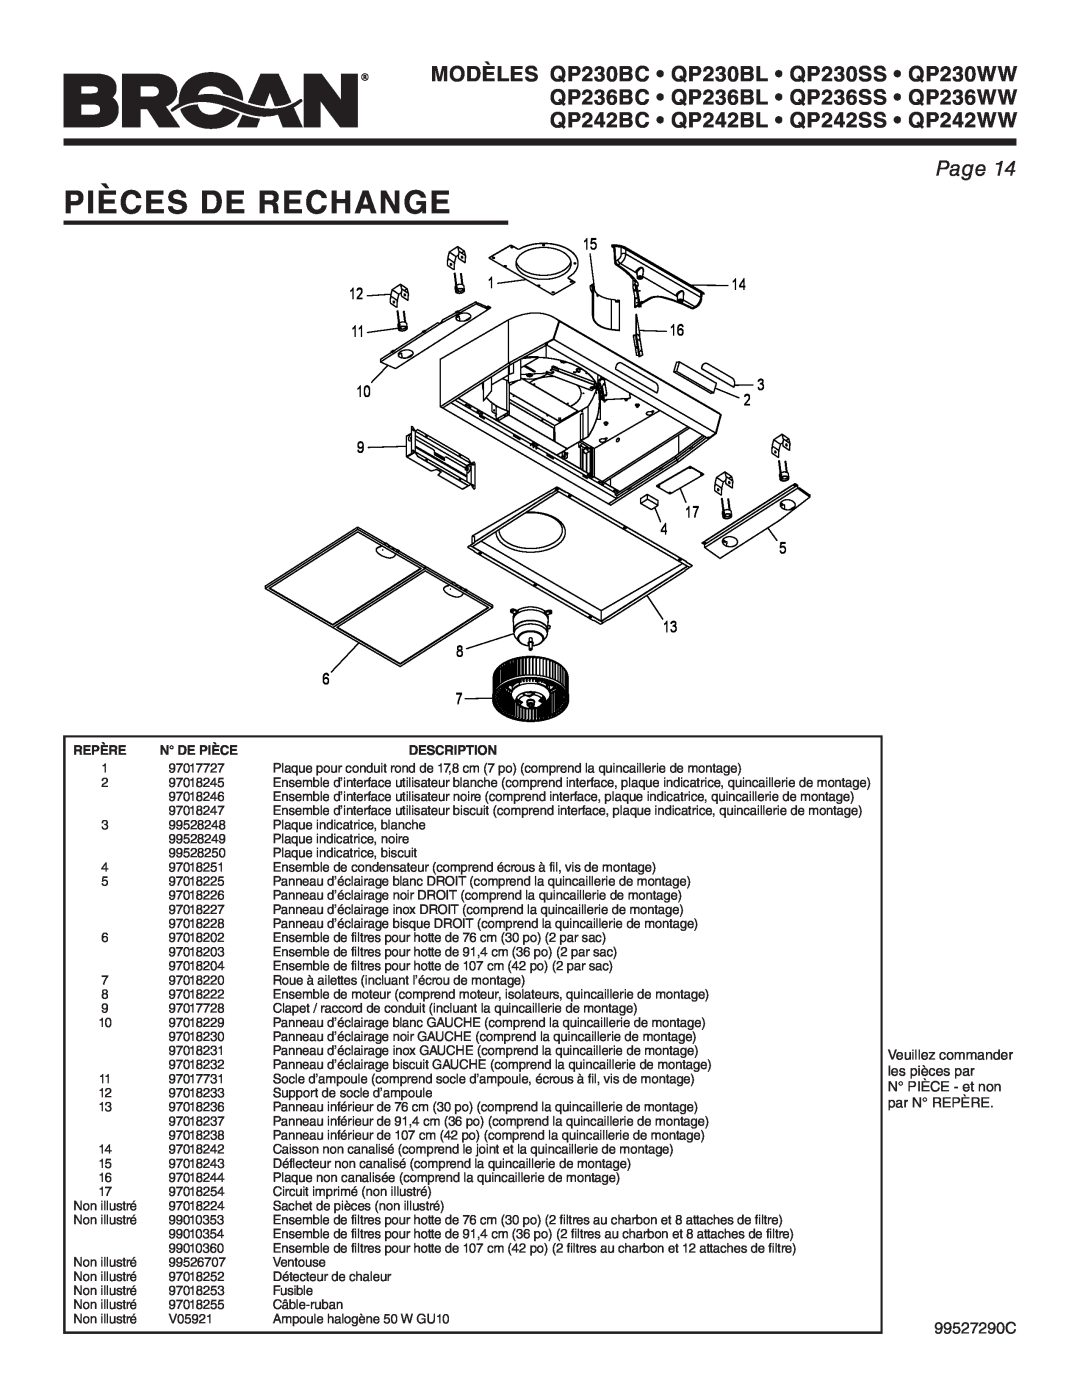 Broan QP236BC Pièces De Rechange, Page, Veuillez commander, les pièces par, N PIÈCE - et non, par N REPÈRE, 99527290C 